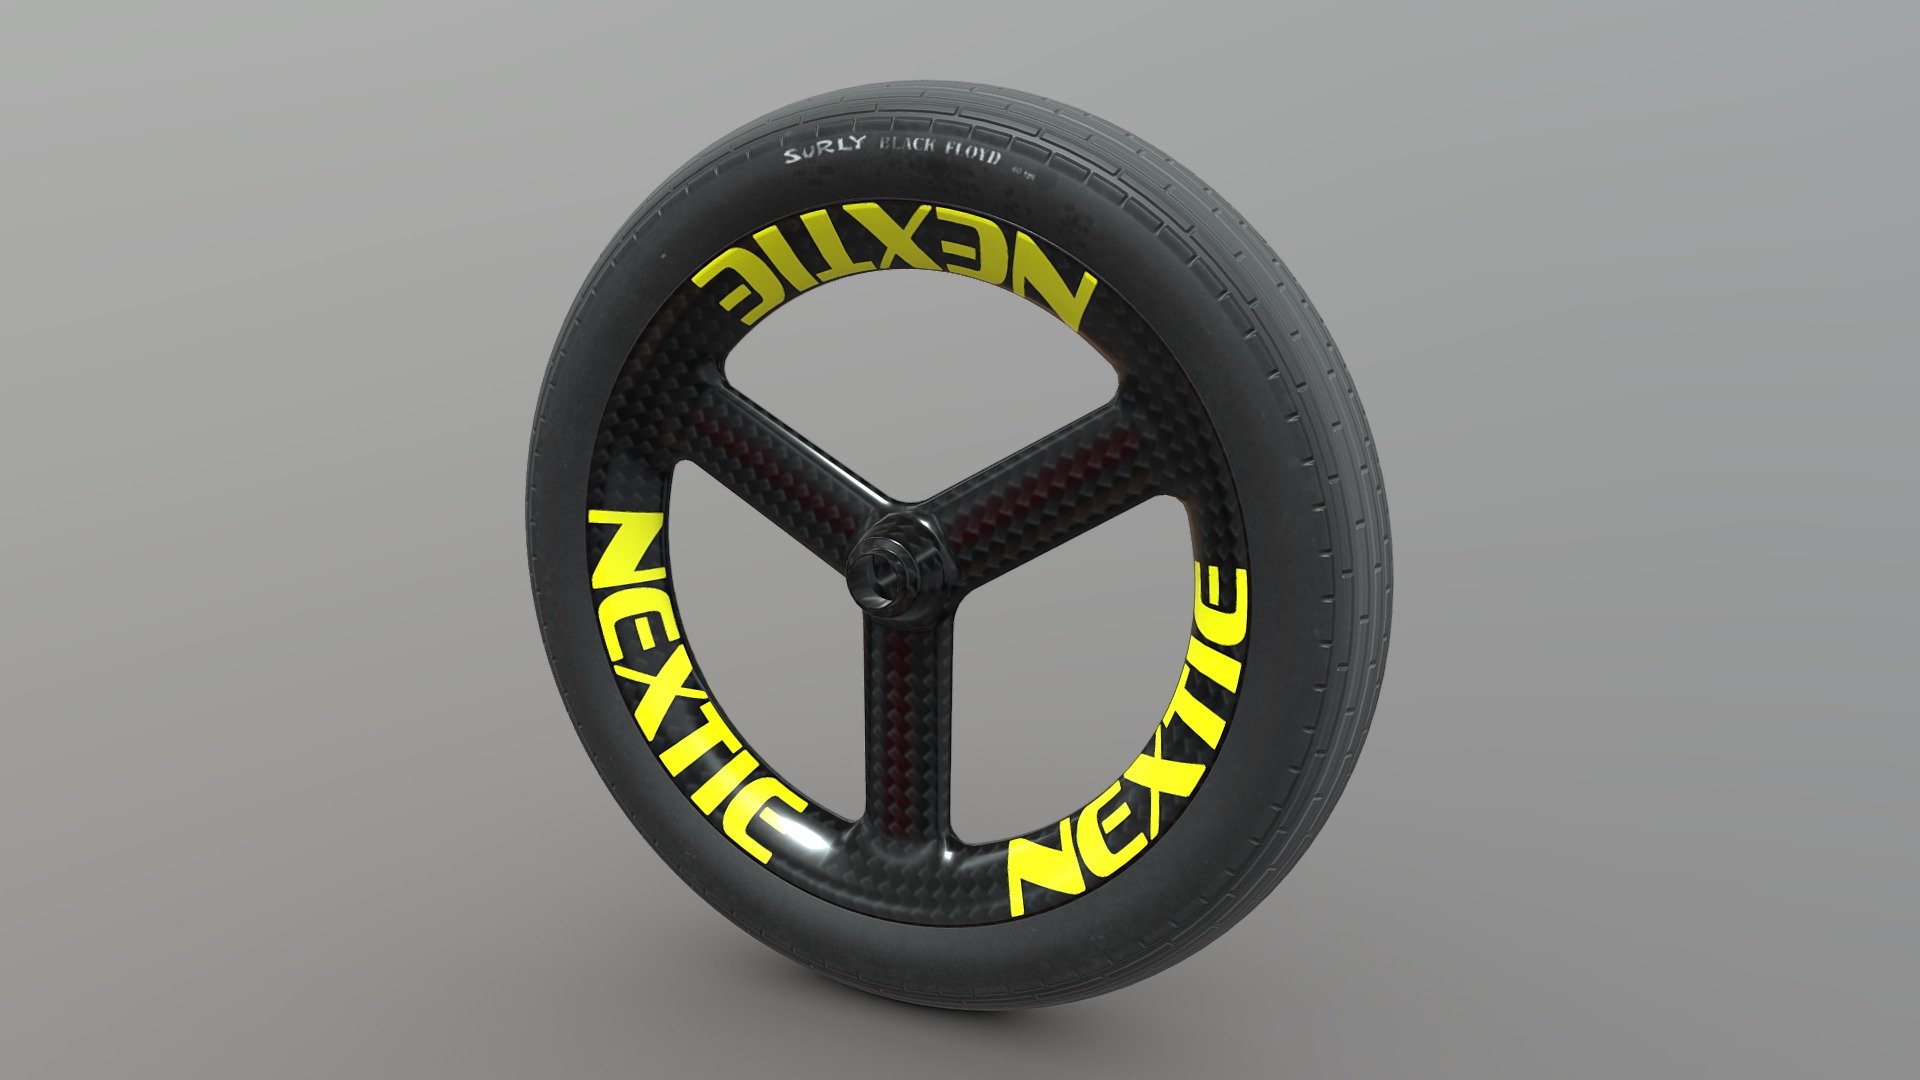 Nextie carbon wheel for fatbike - 3D model - 3d model-Fat Bike Wheel-NEXTIE - 3D model by StarTone 3d model